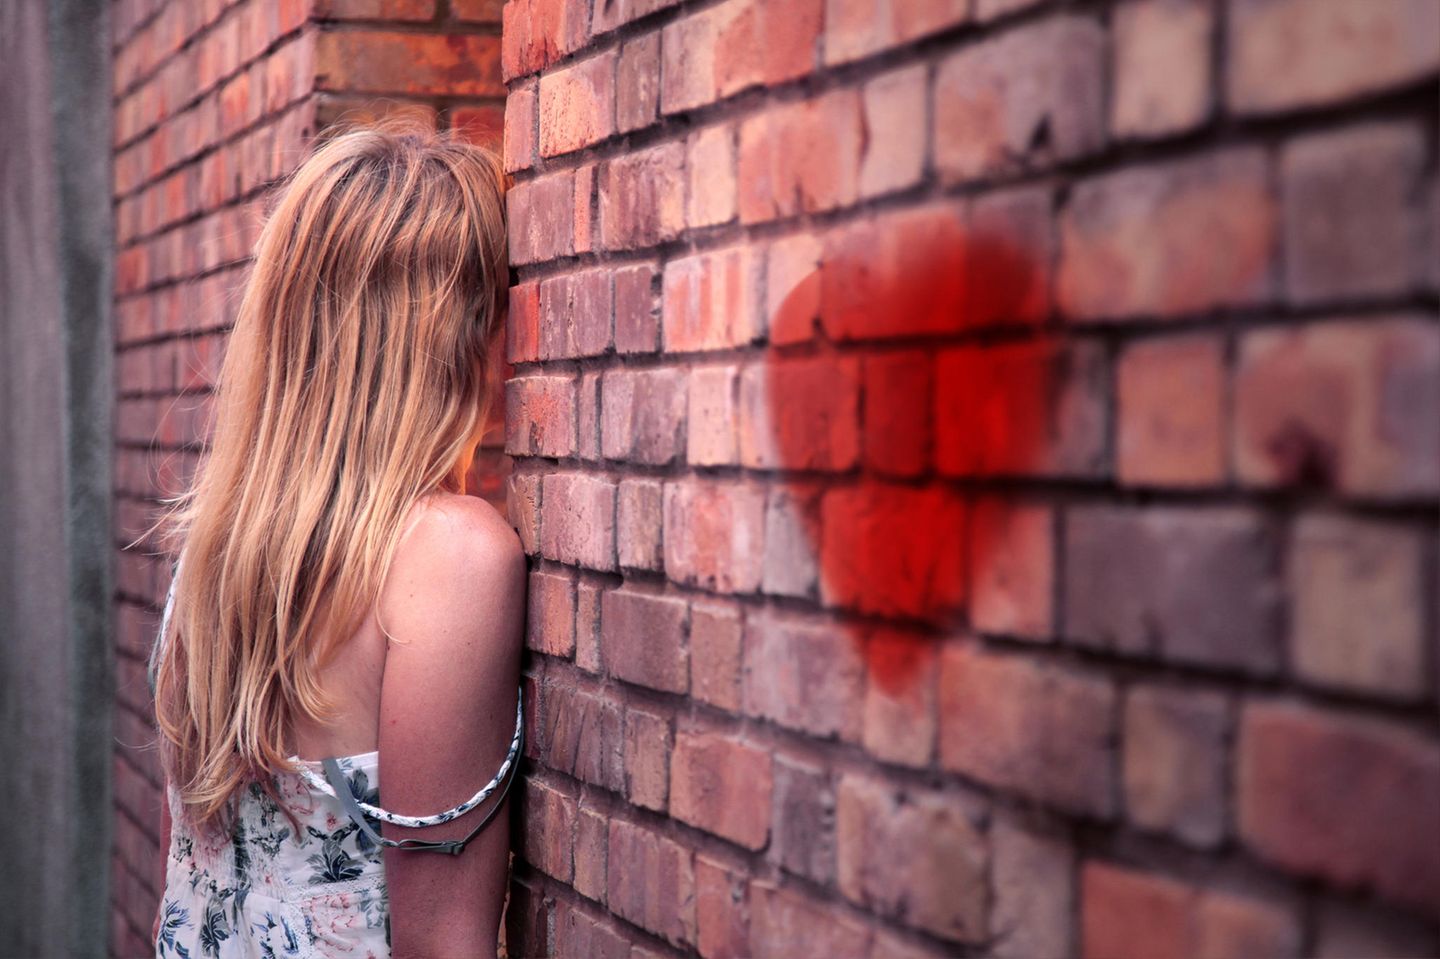 Unerwiderte Liebe: Eine junge Frau steht mit dem Gesicht zur Wand